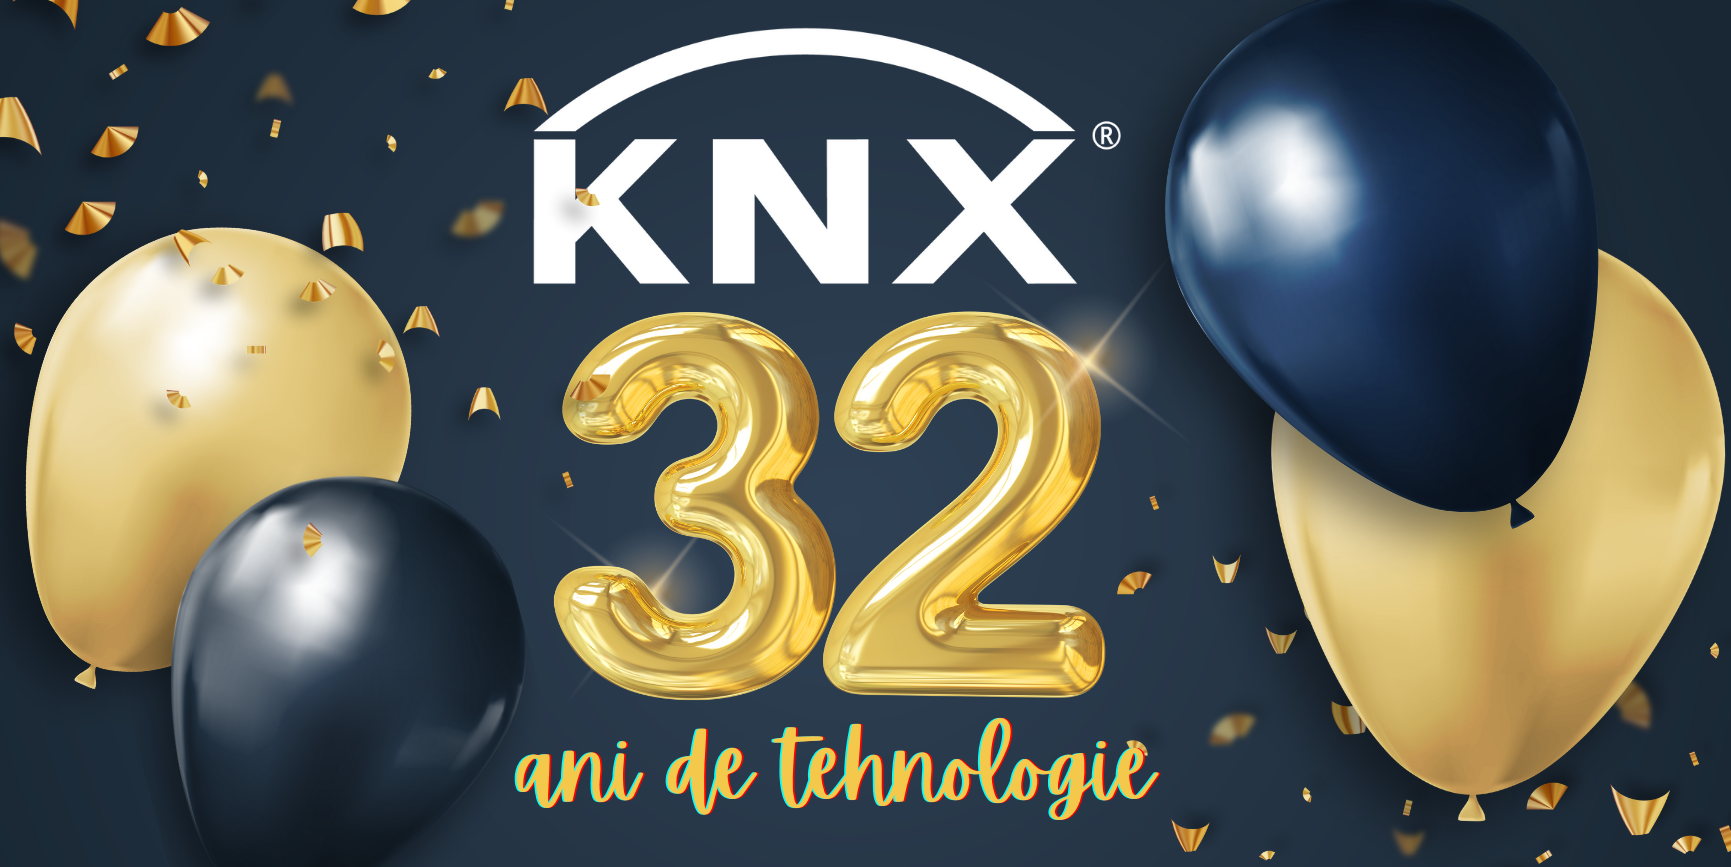 Sarbatorim cei 32 ani KNX  cu promotie -15% la cursurile KNX